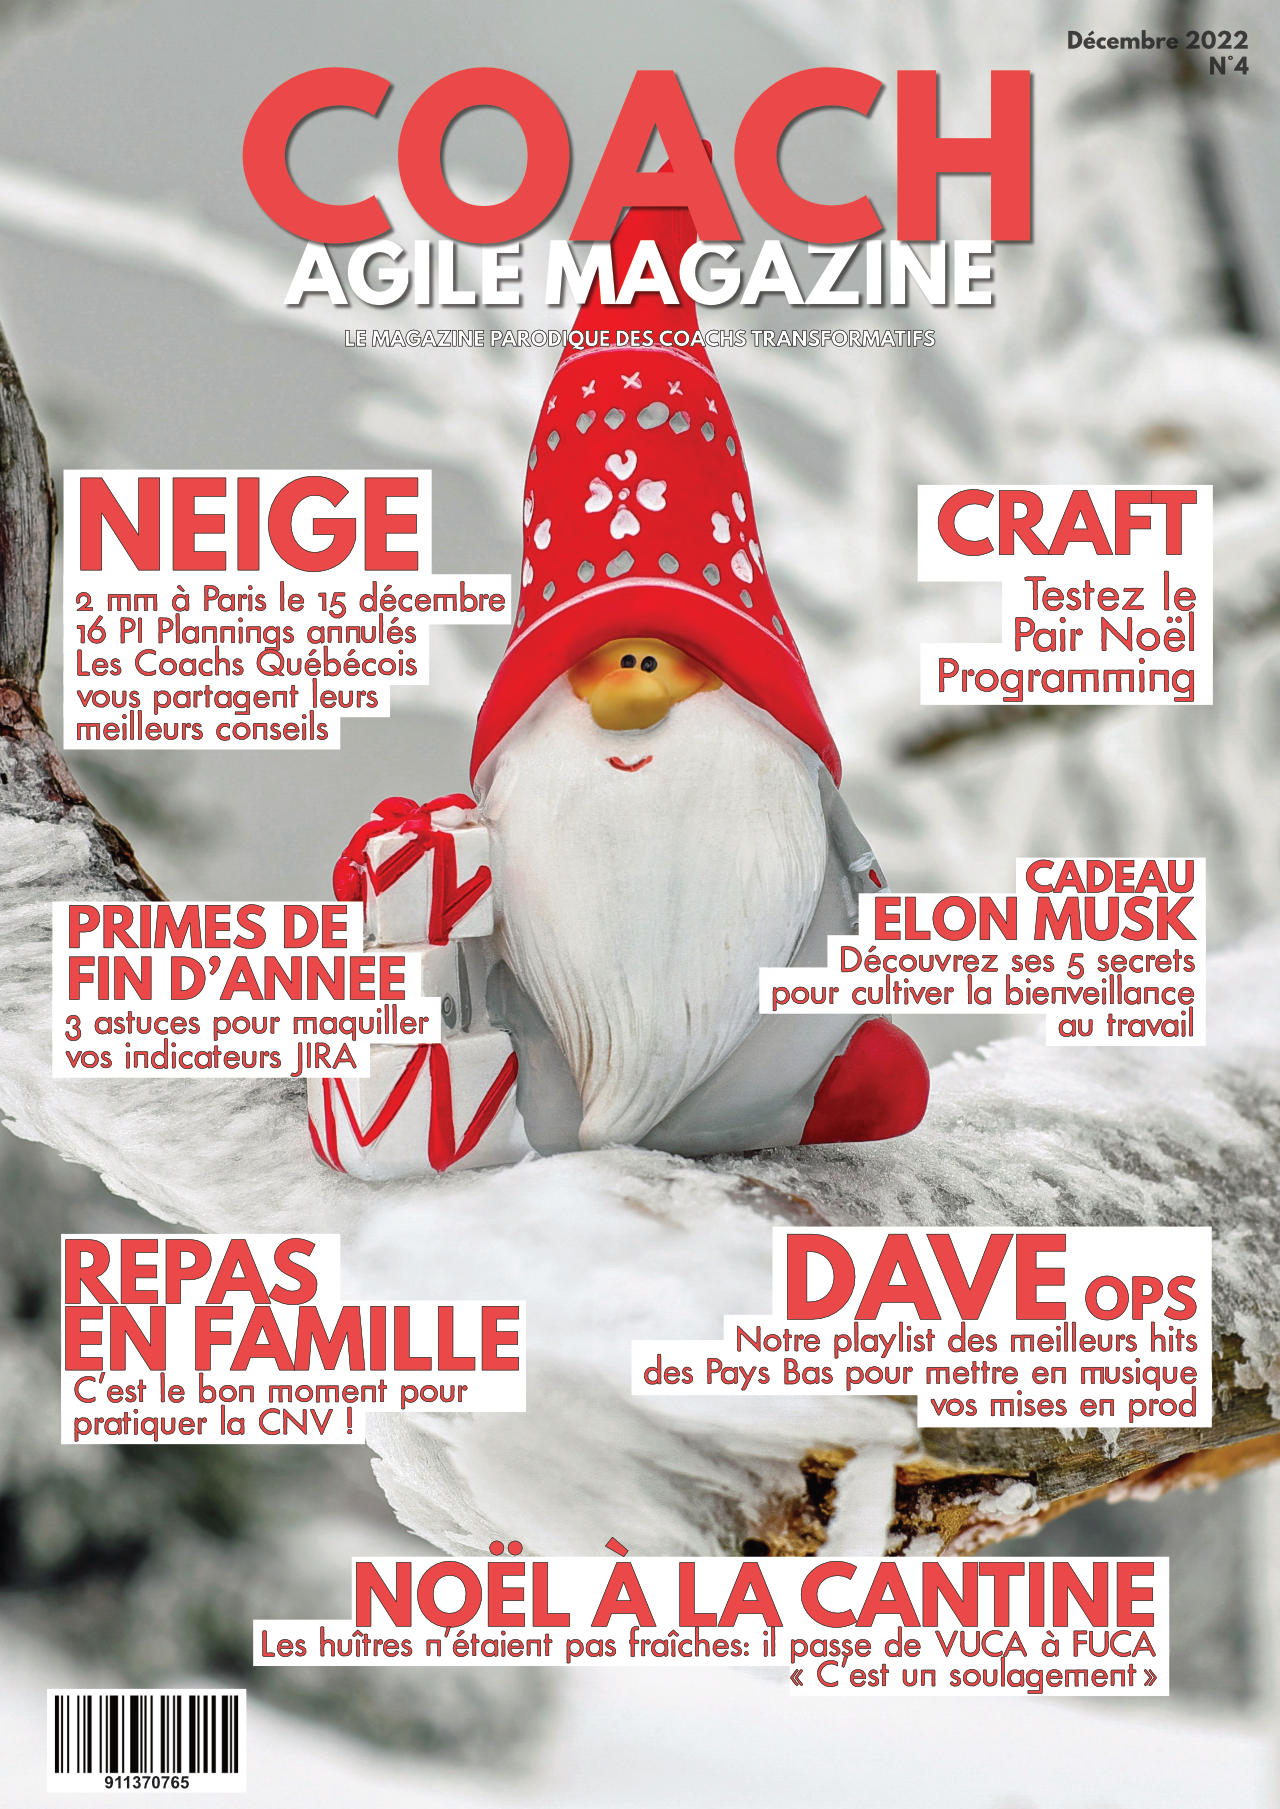 Coach agile Magazine #4